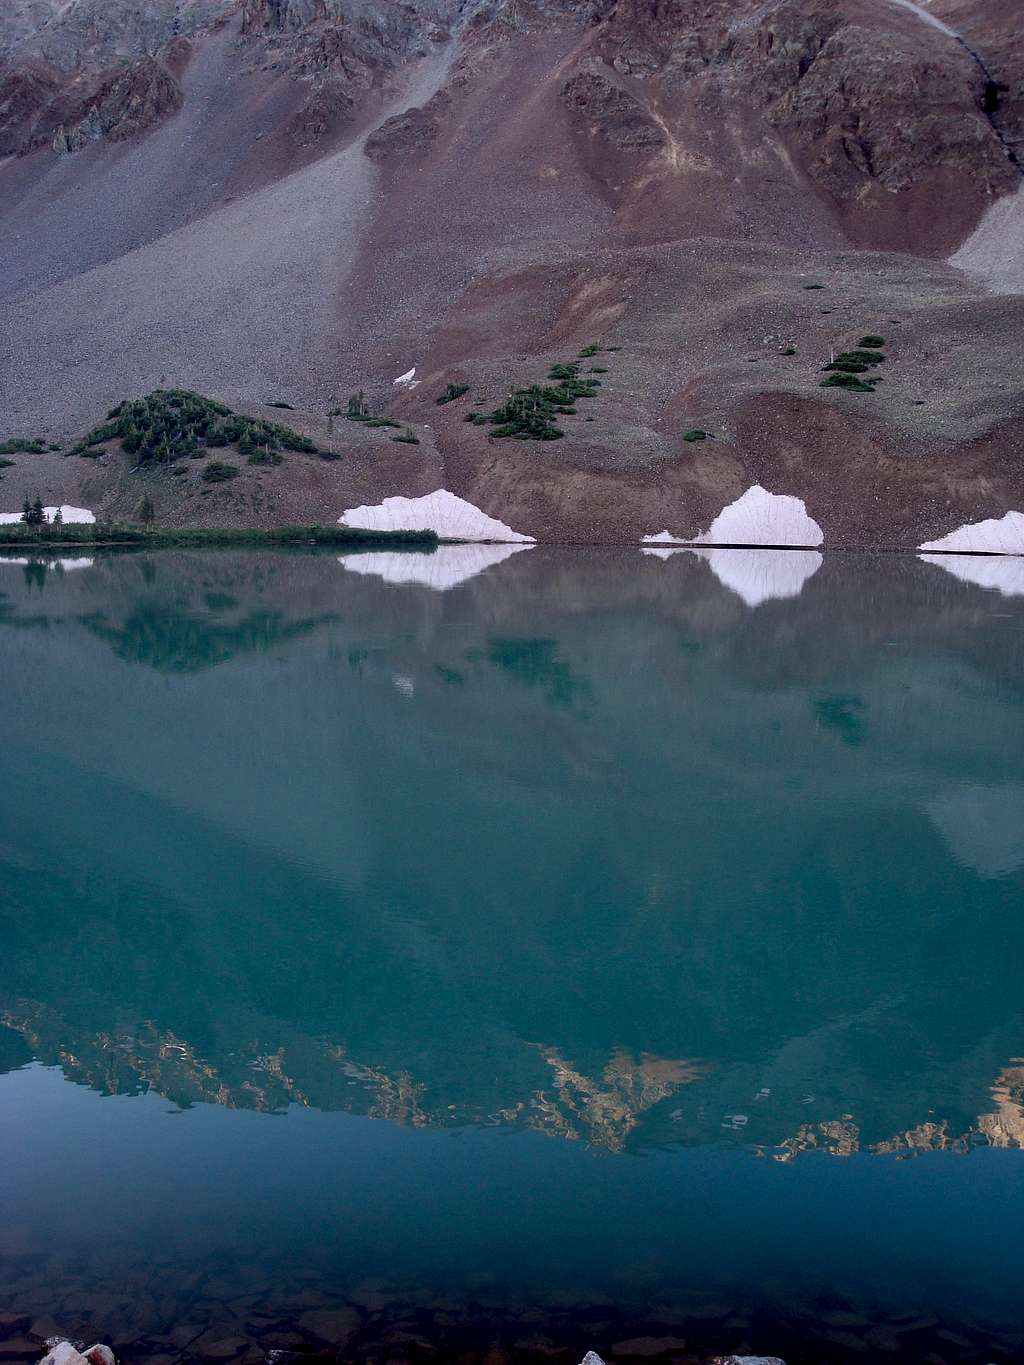 Reflection in Navajo Lake